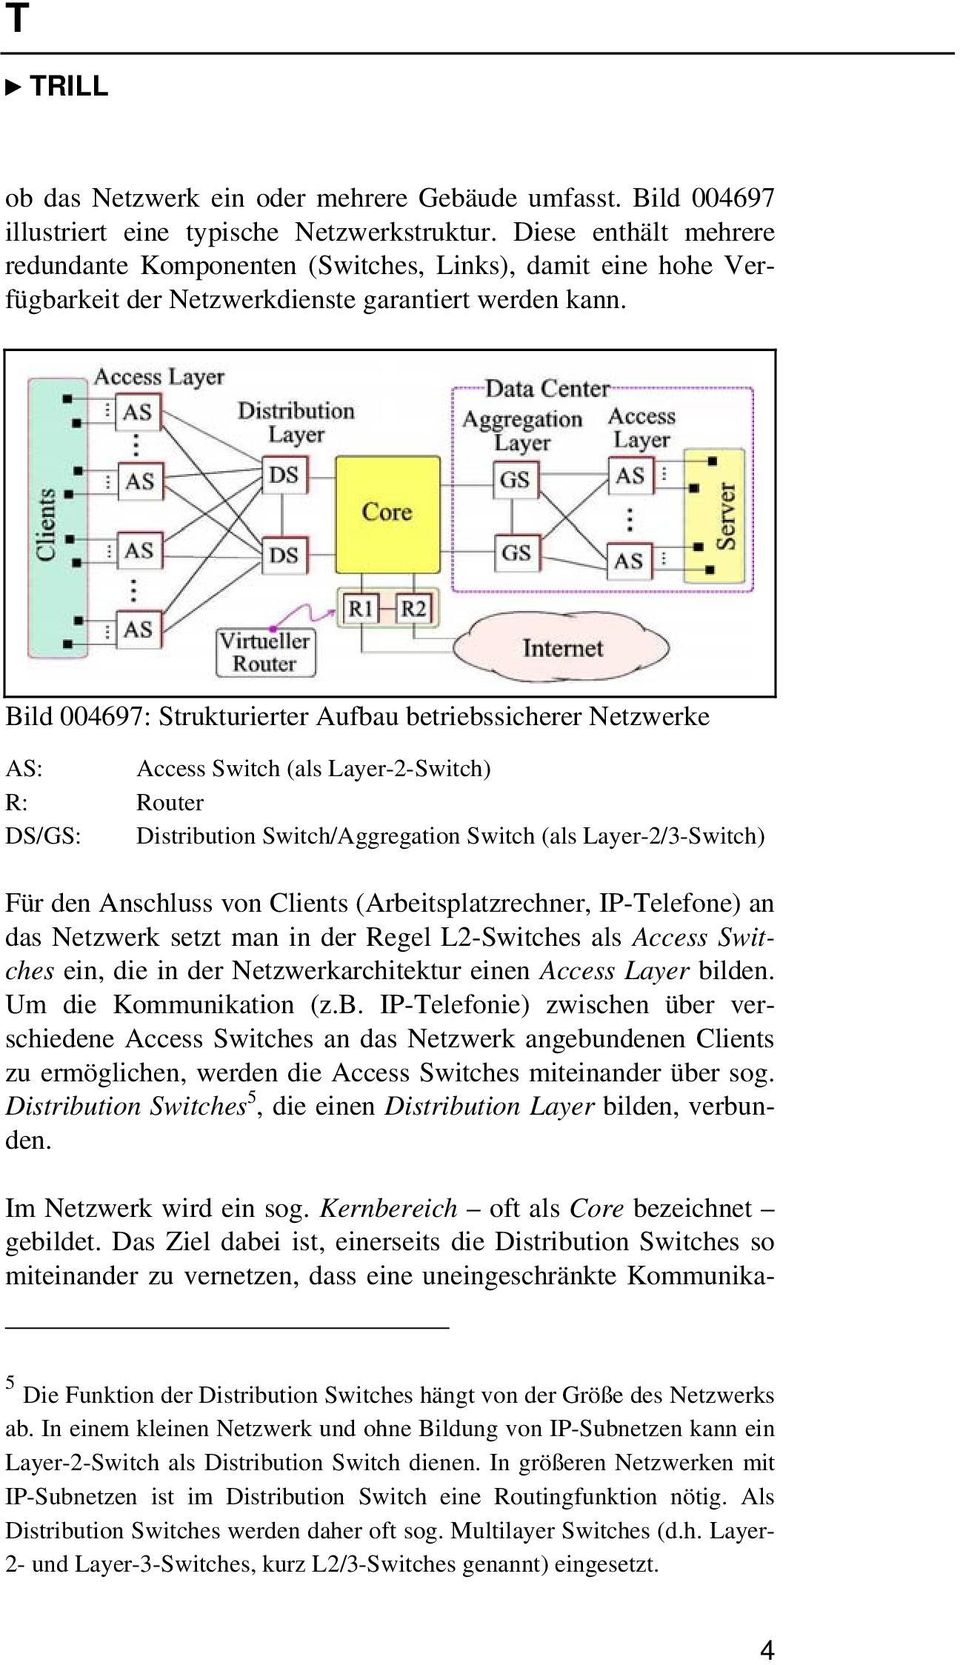 Bild 004697: Strukturierter Aufbau betriebssicherer Netzwerke AS: Access Switch (als Layer-2-Switch) R: Router DS/GS: Distribution Switch/Aggregation Switch (als Layer-2/3-Switch) Für den Anschluss